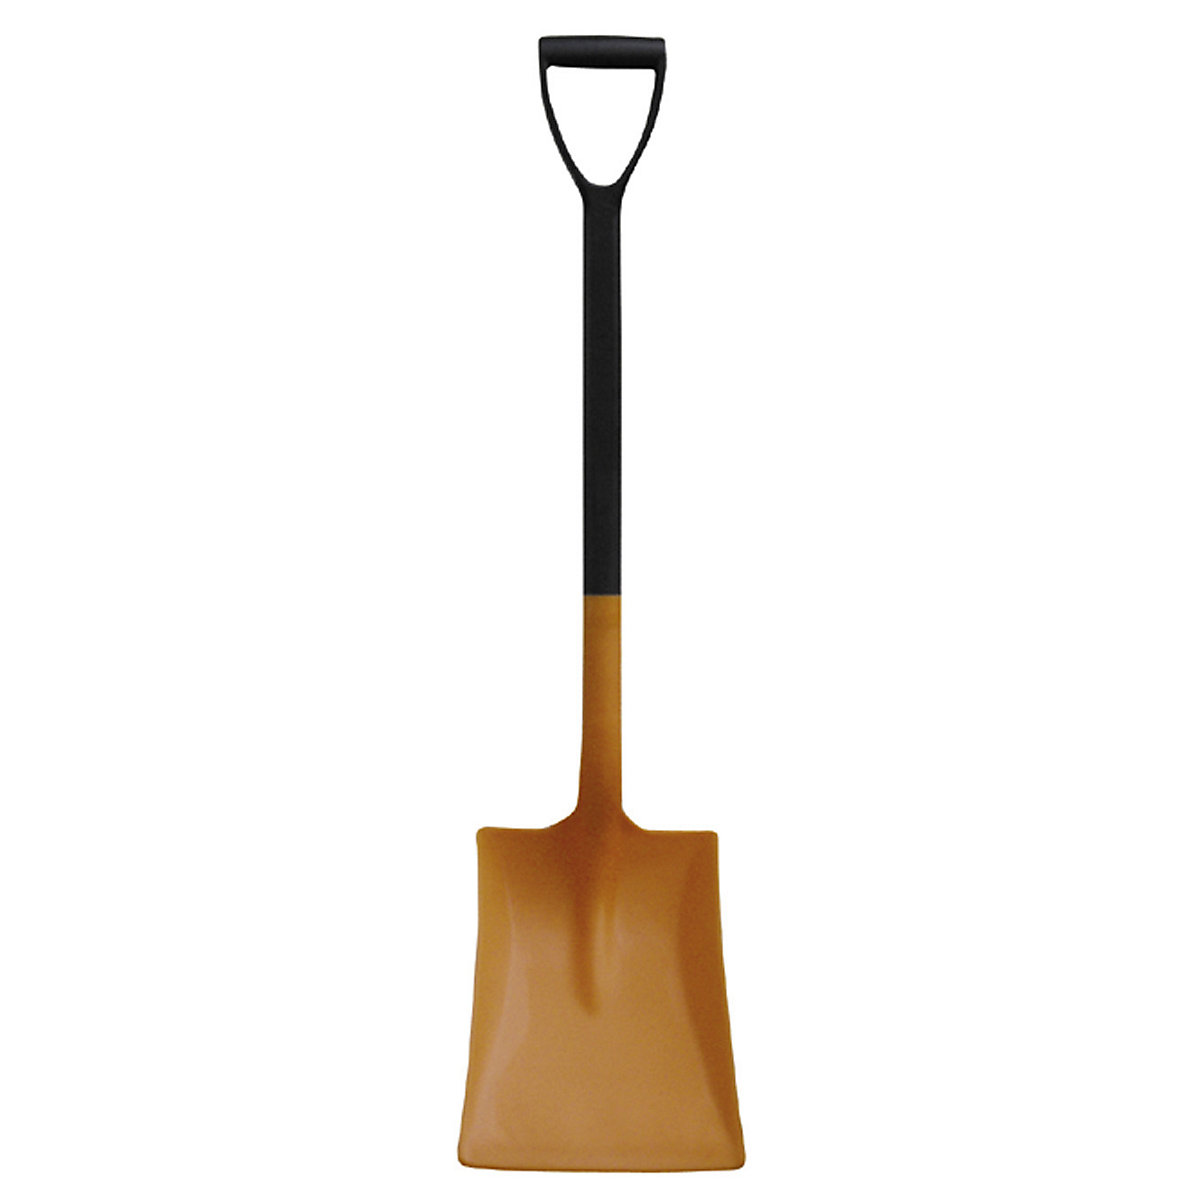 Universal shovel made of PP – CEMO, orange, overall length 980 mm